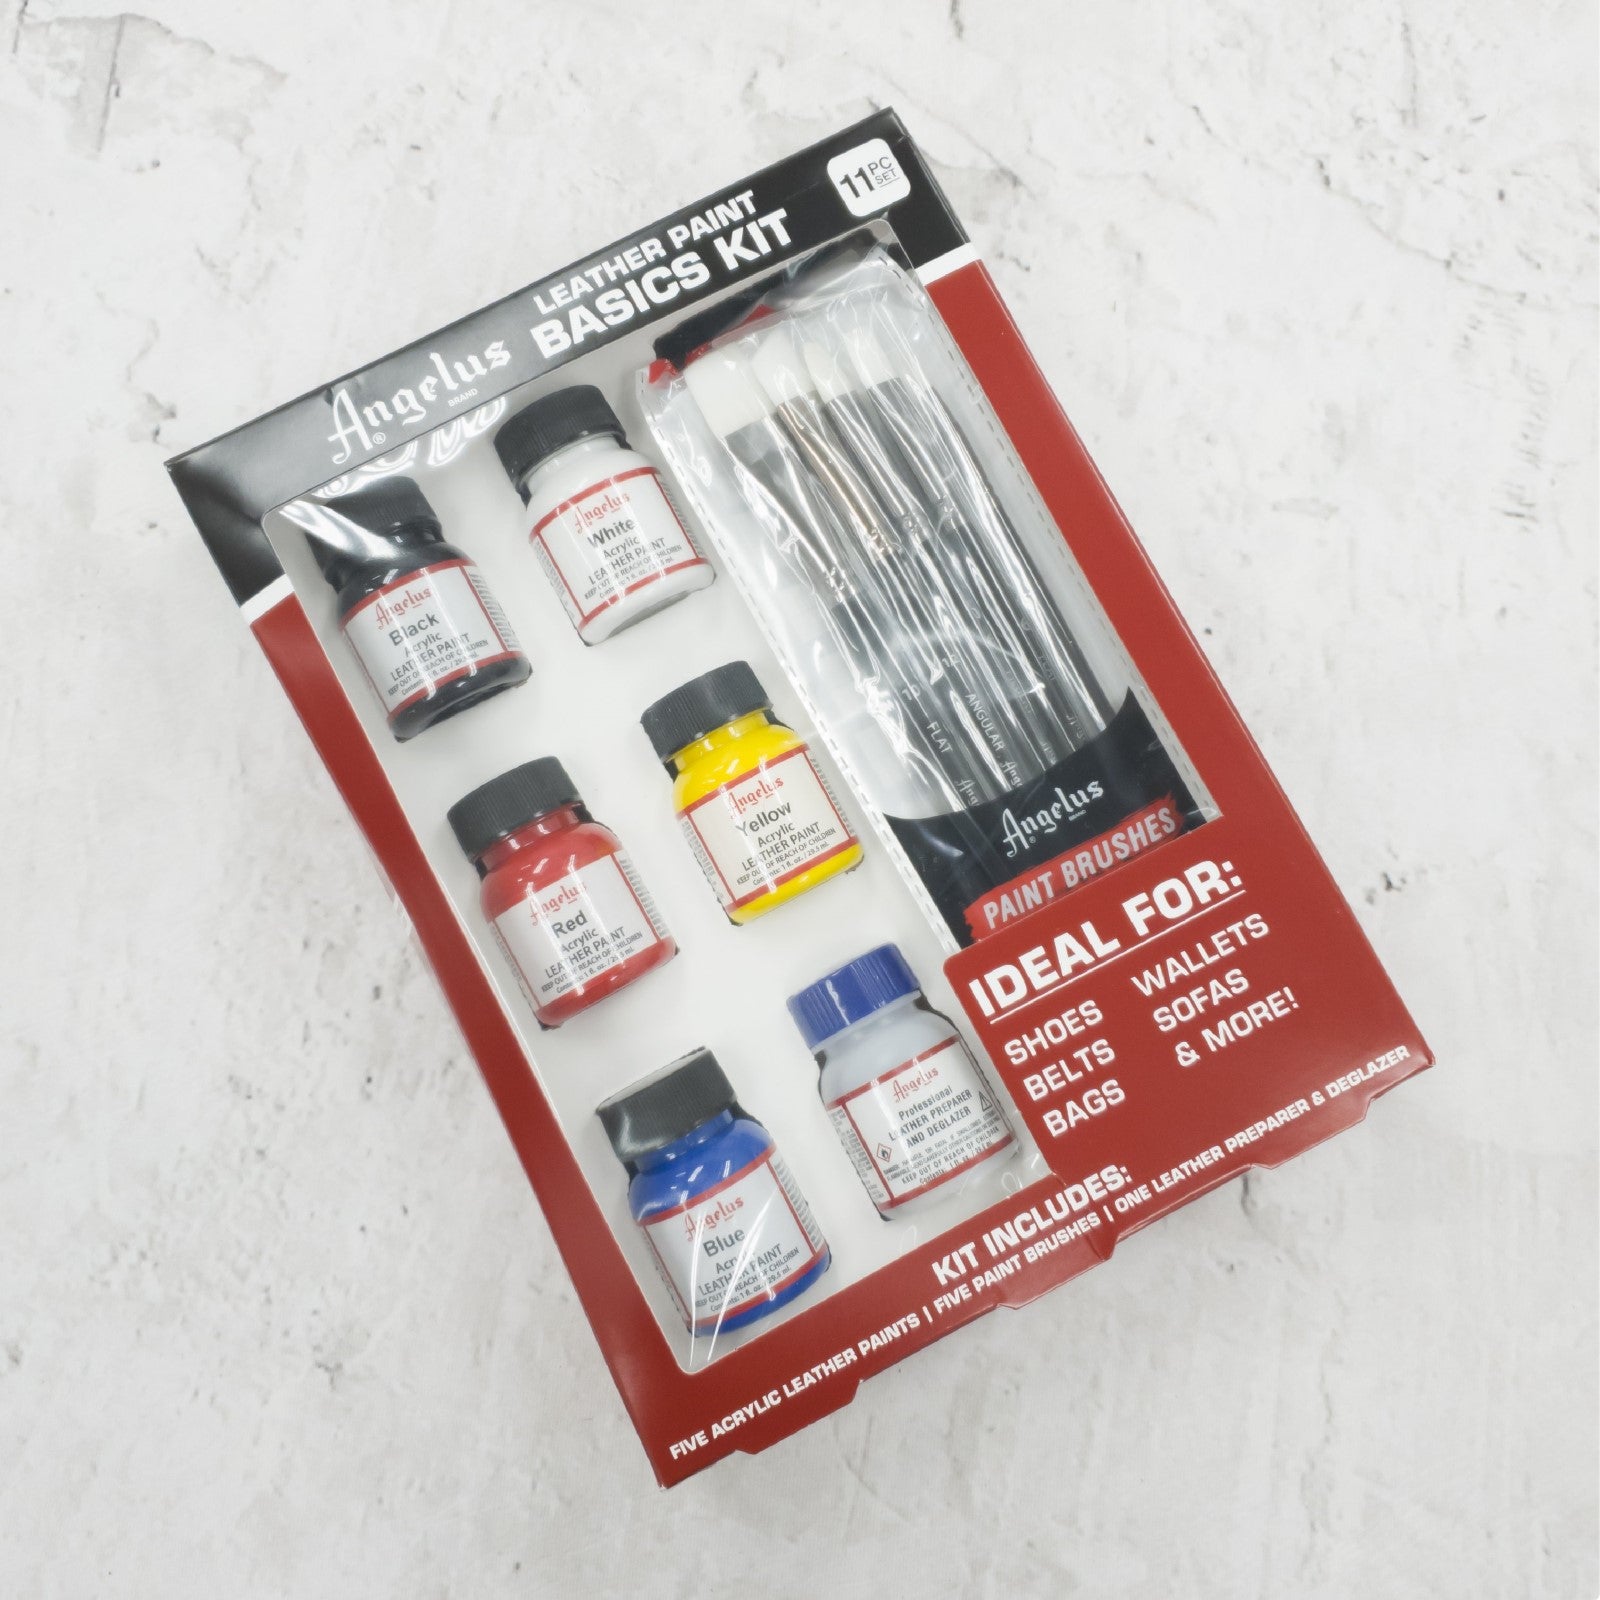 Angelus Leather Paint Basics Kit,  | The Leather Guy